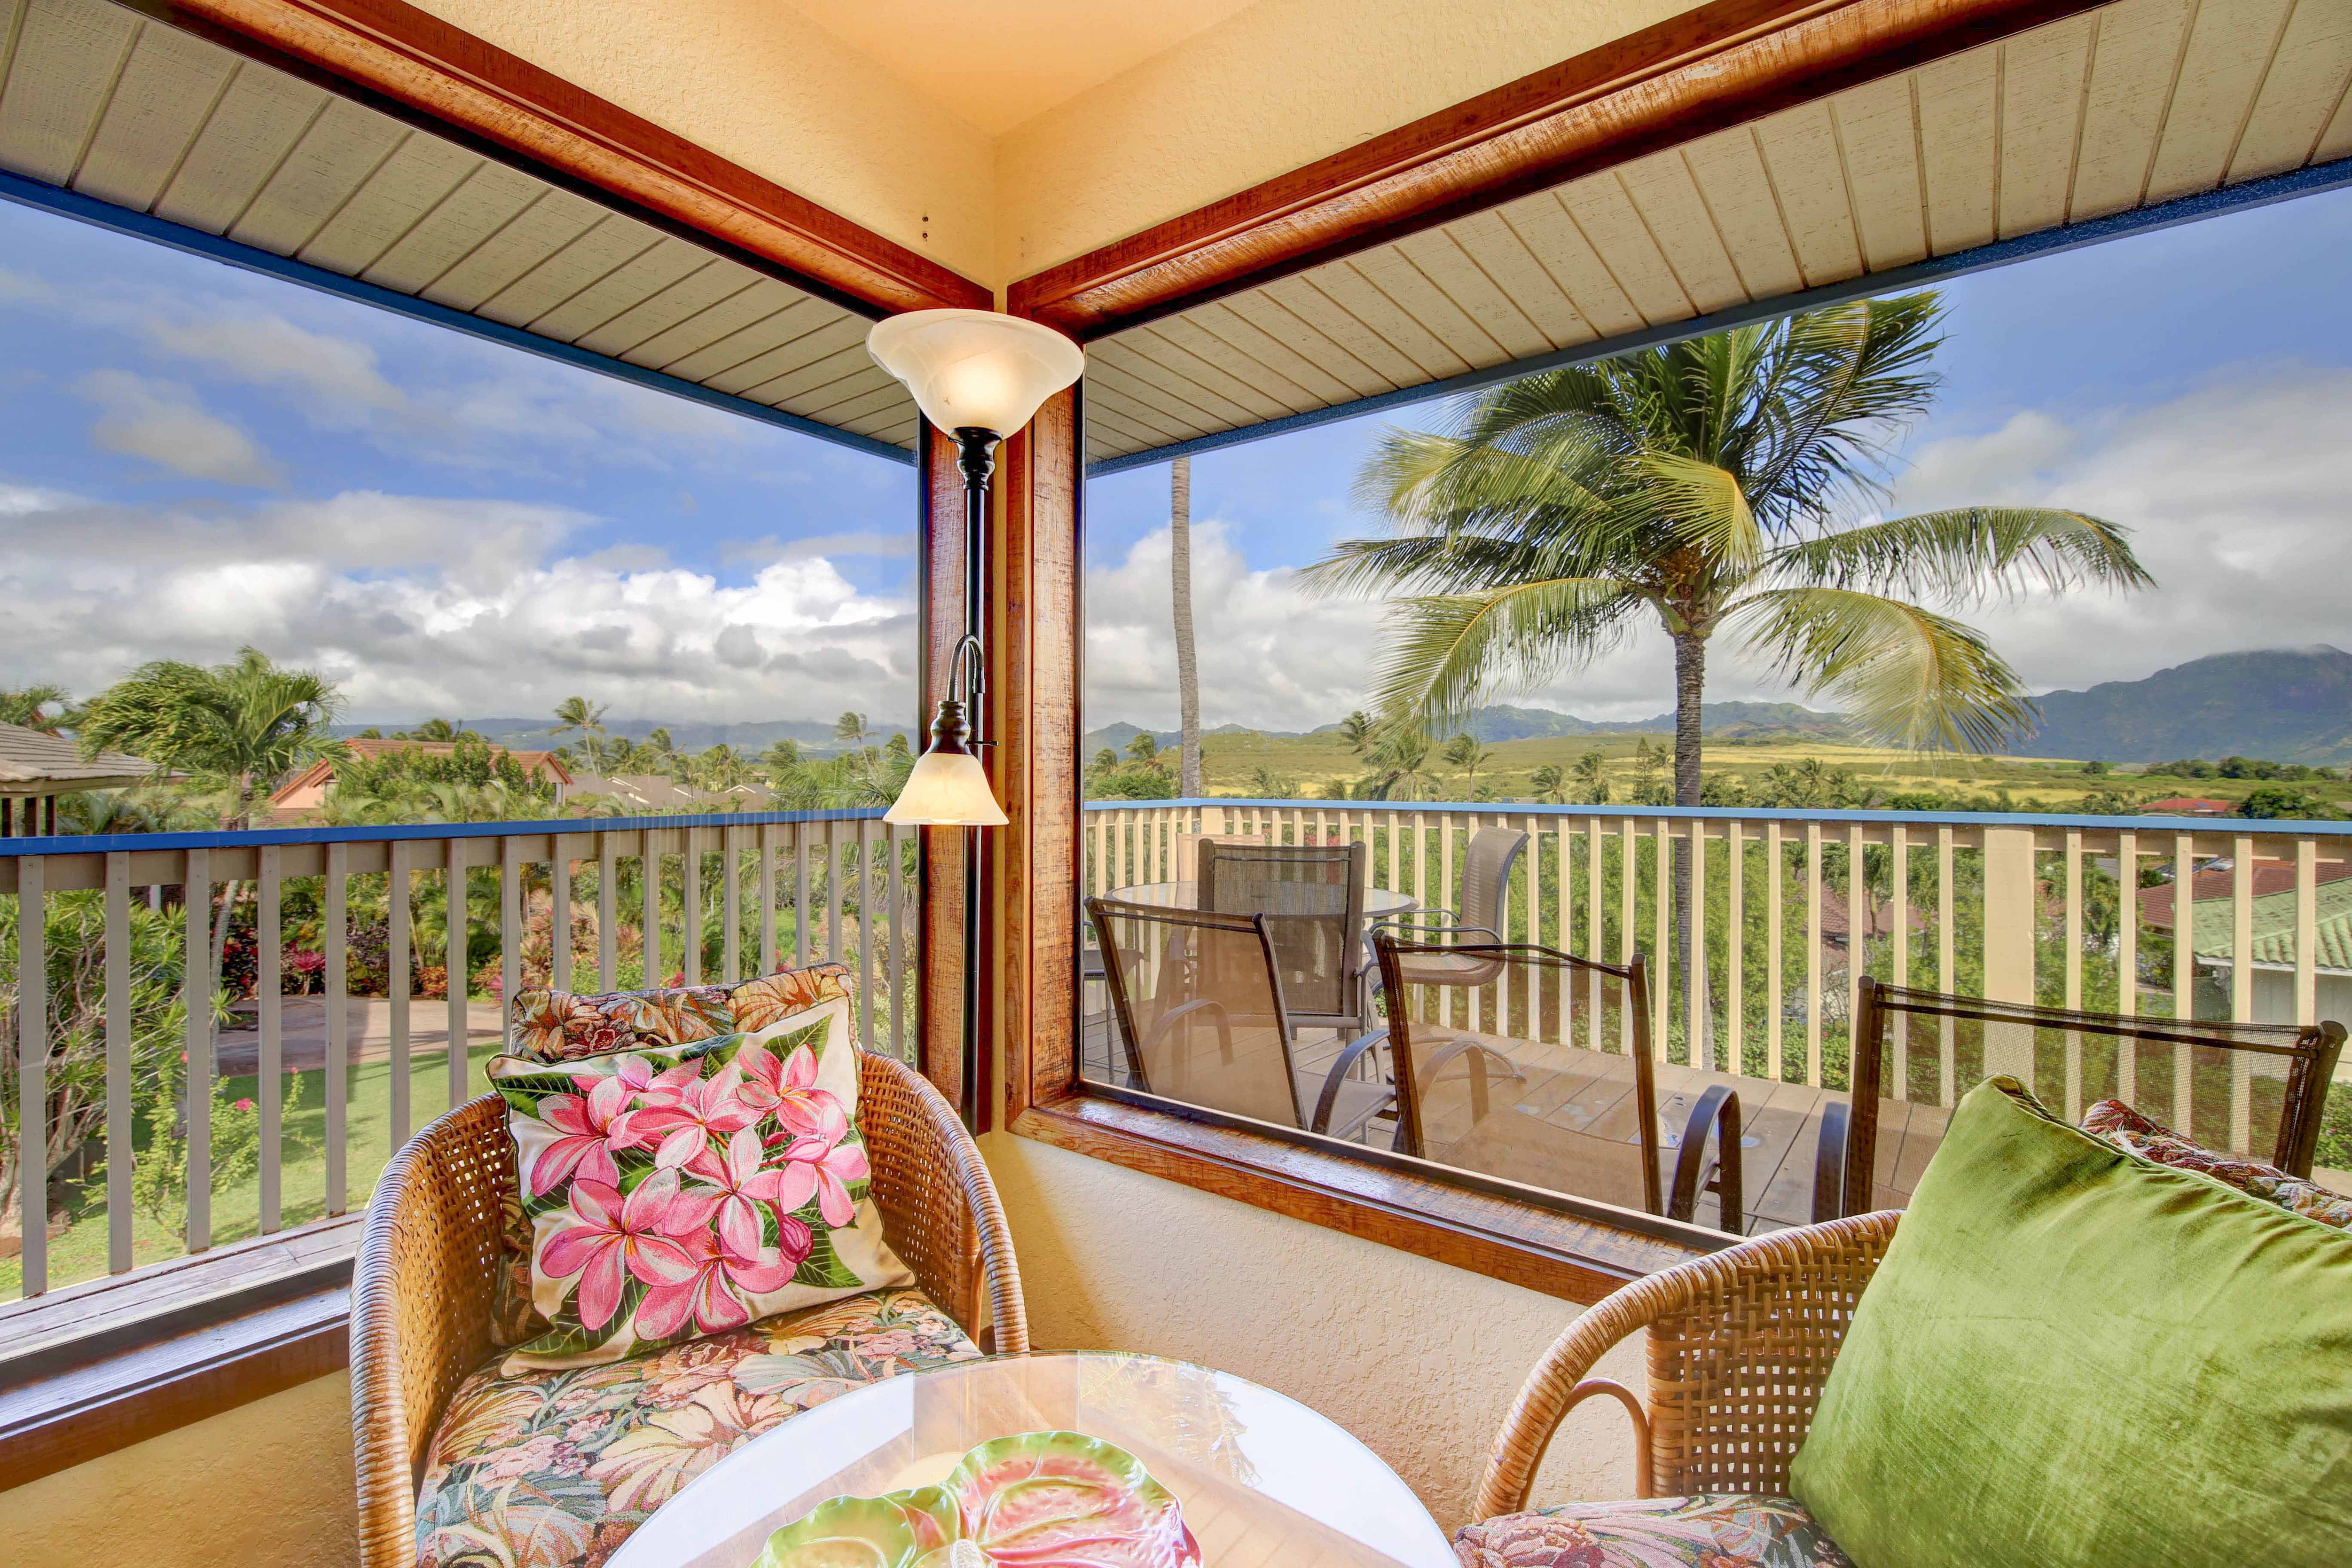 Ocean views from living room, vacation rental home in Poipu Kauai Hawaii